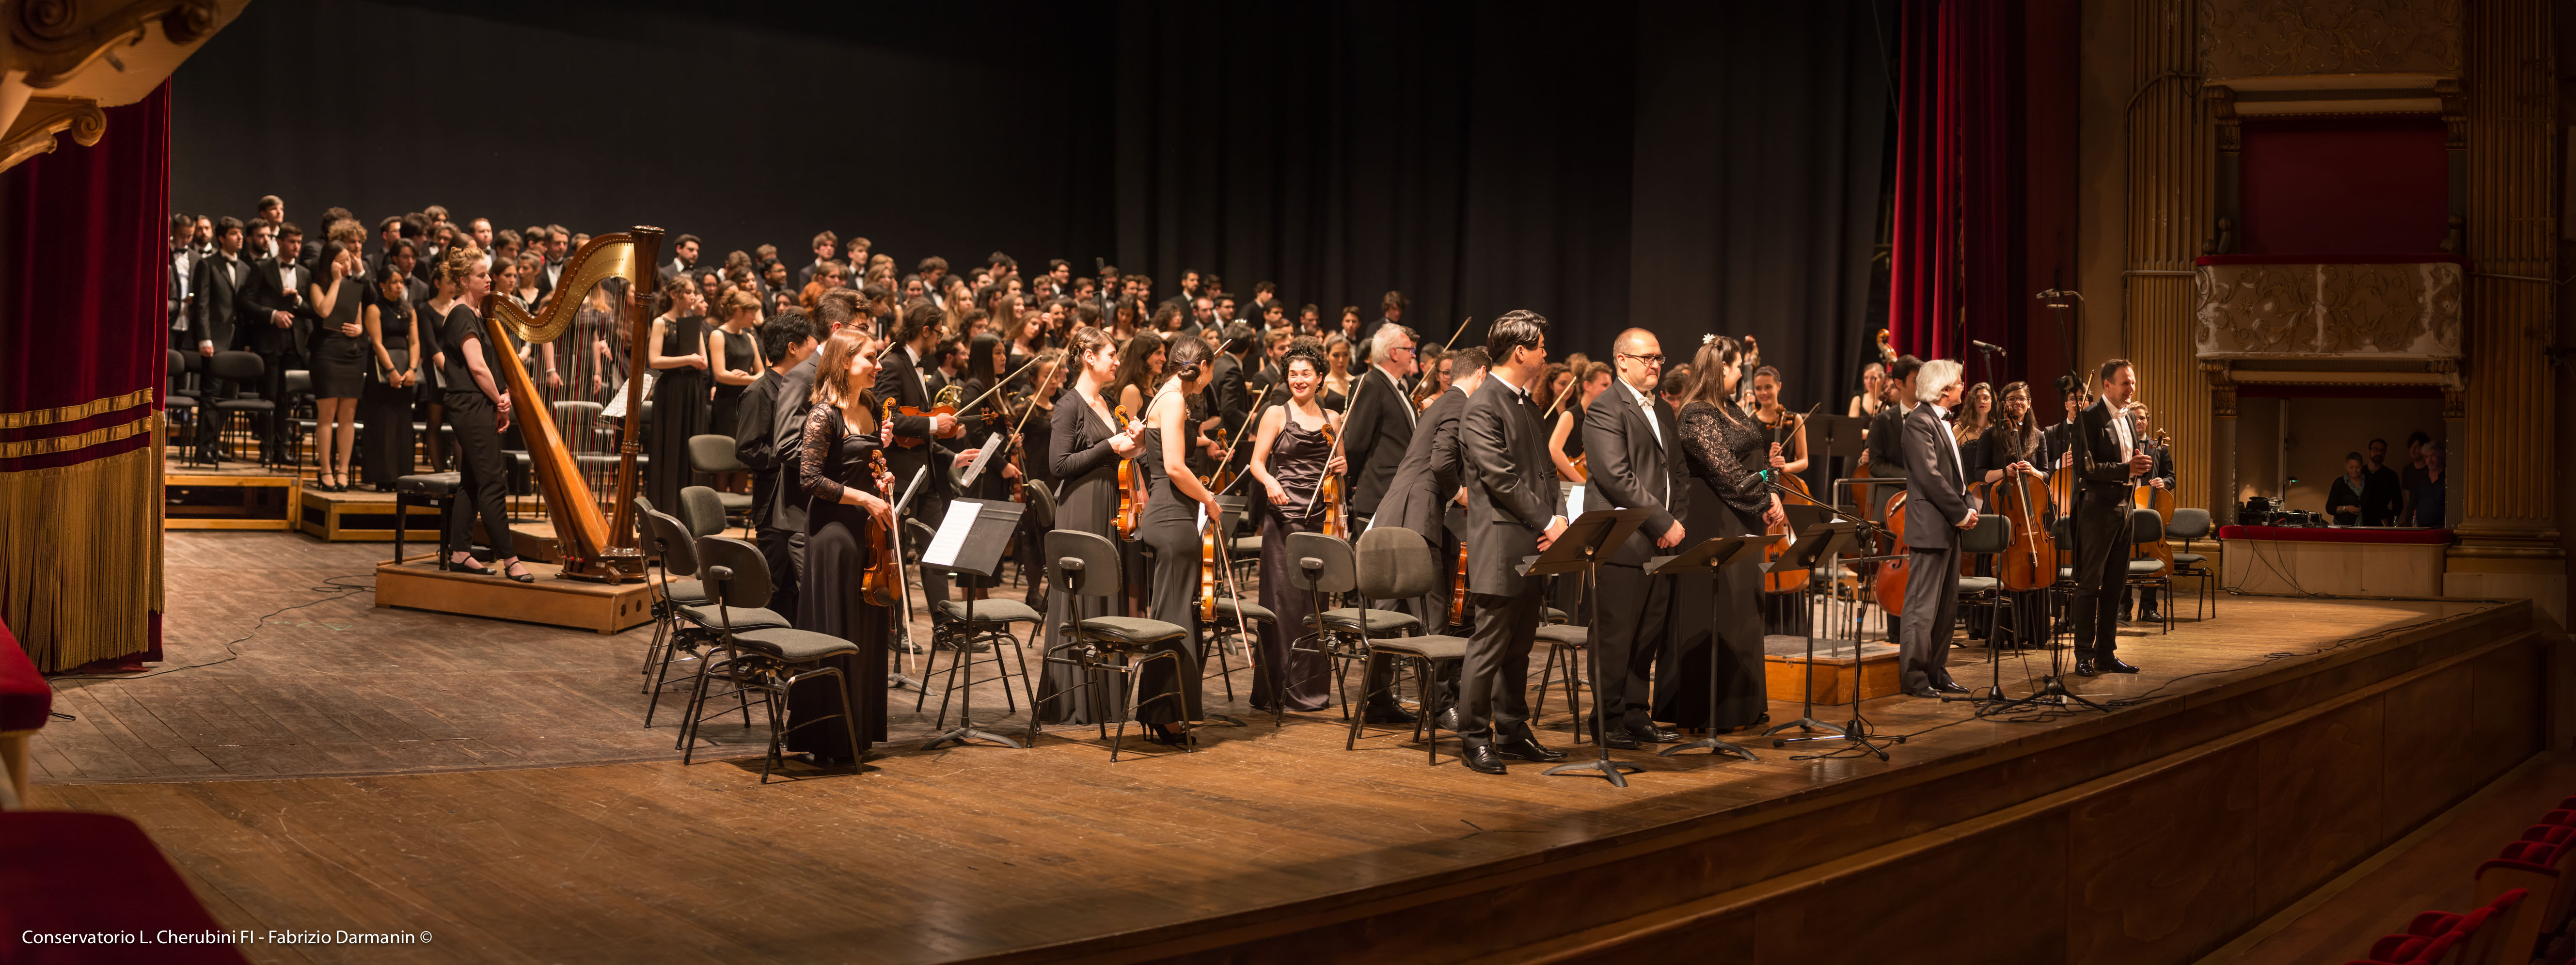 Orchestra e Coro Conservatorio Cherubini - IMMAGINE DI REPERTORIO foto di Fabrizio Darmanin ©